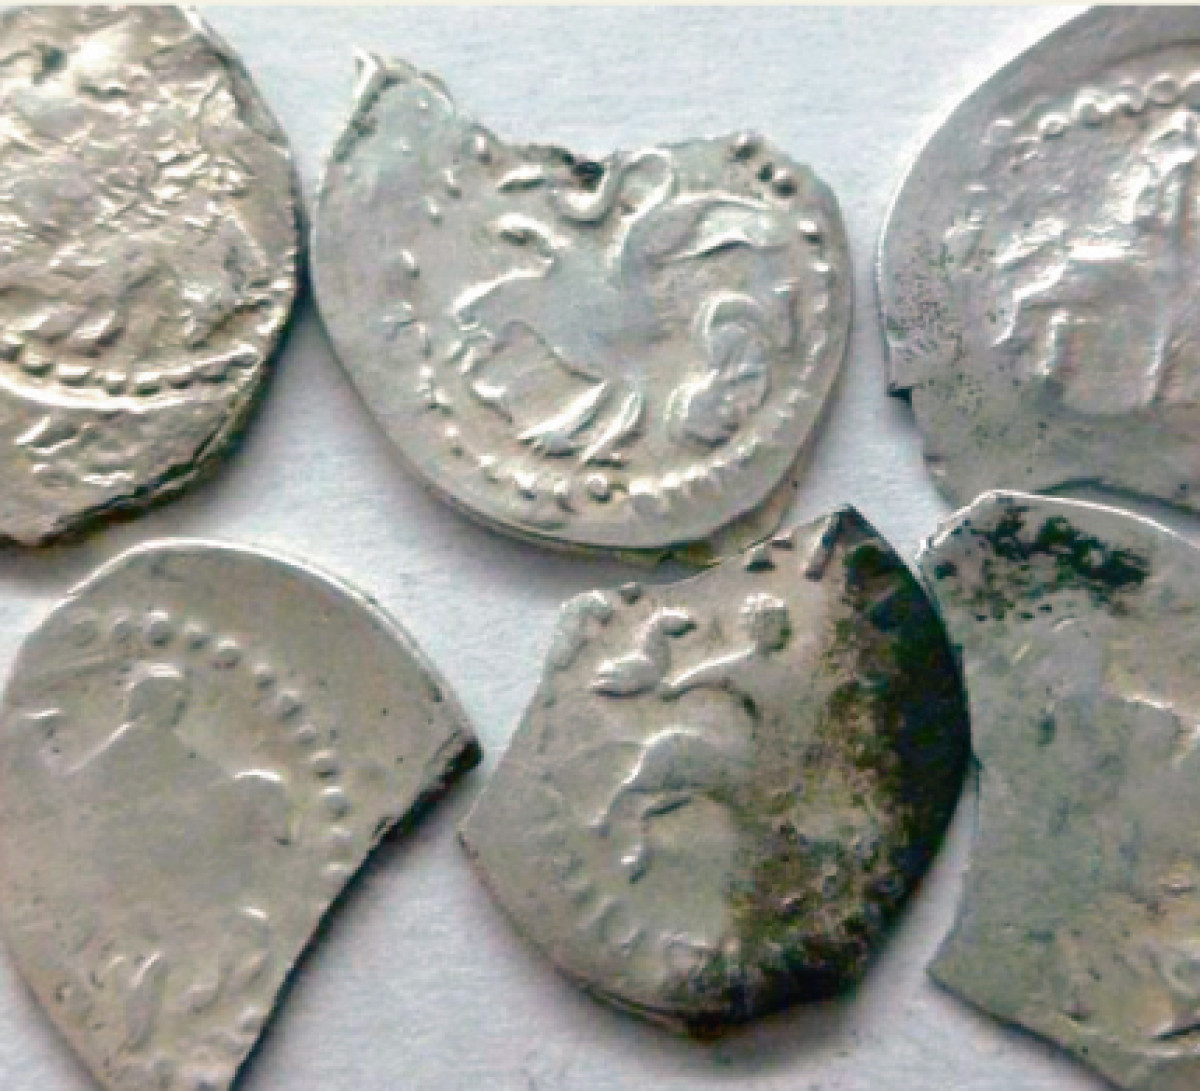 В кладах XV-XVI веков часто находили неполноценные монеты. Люди специально срезали края монет и надеялись, что убыль не будет заметна, а серебряные «обрезки» прятали в кладах.